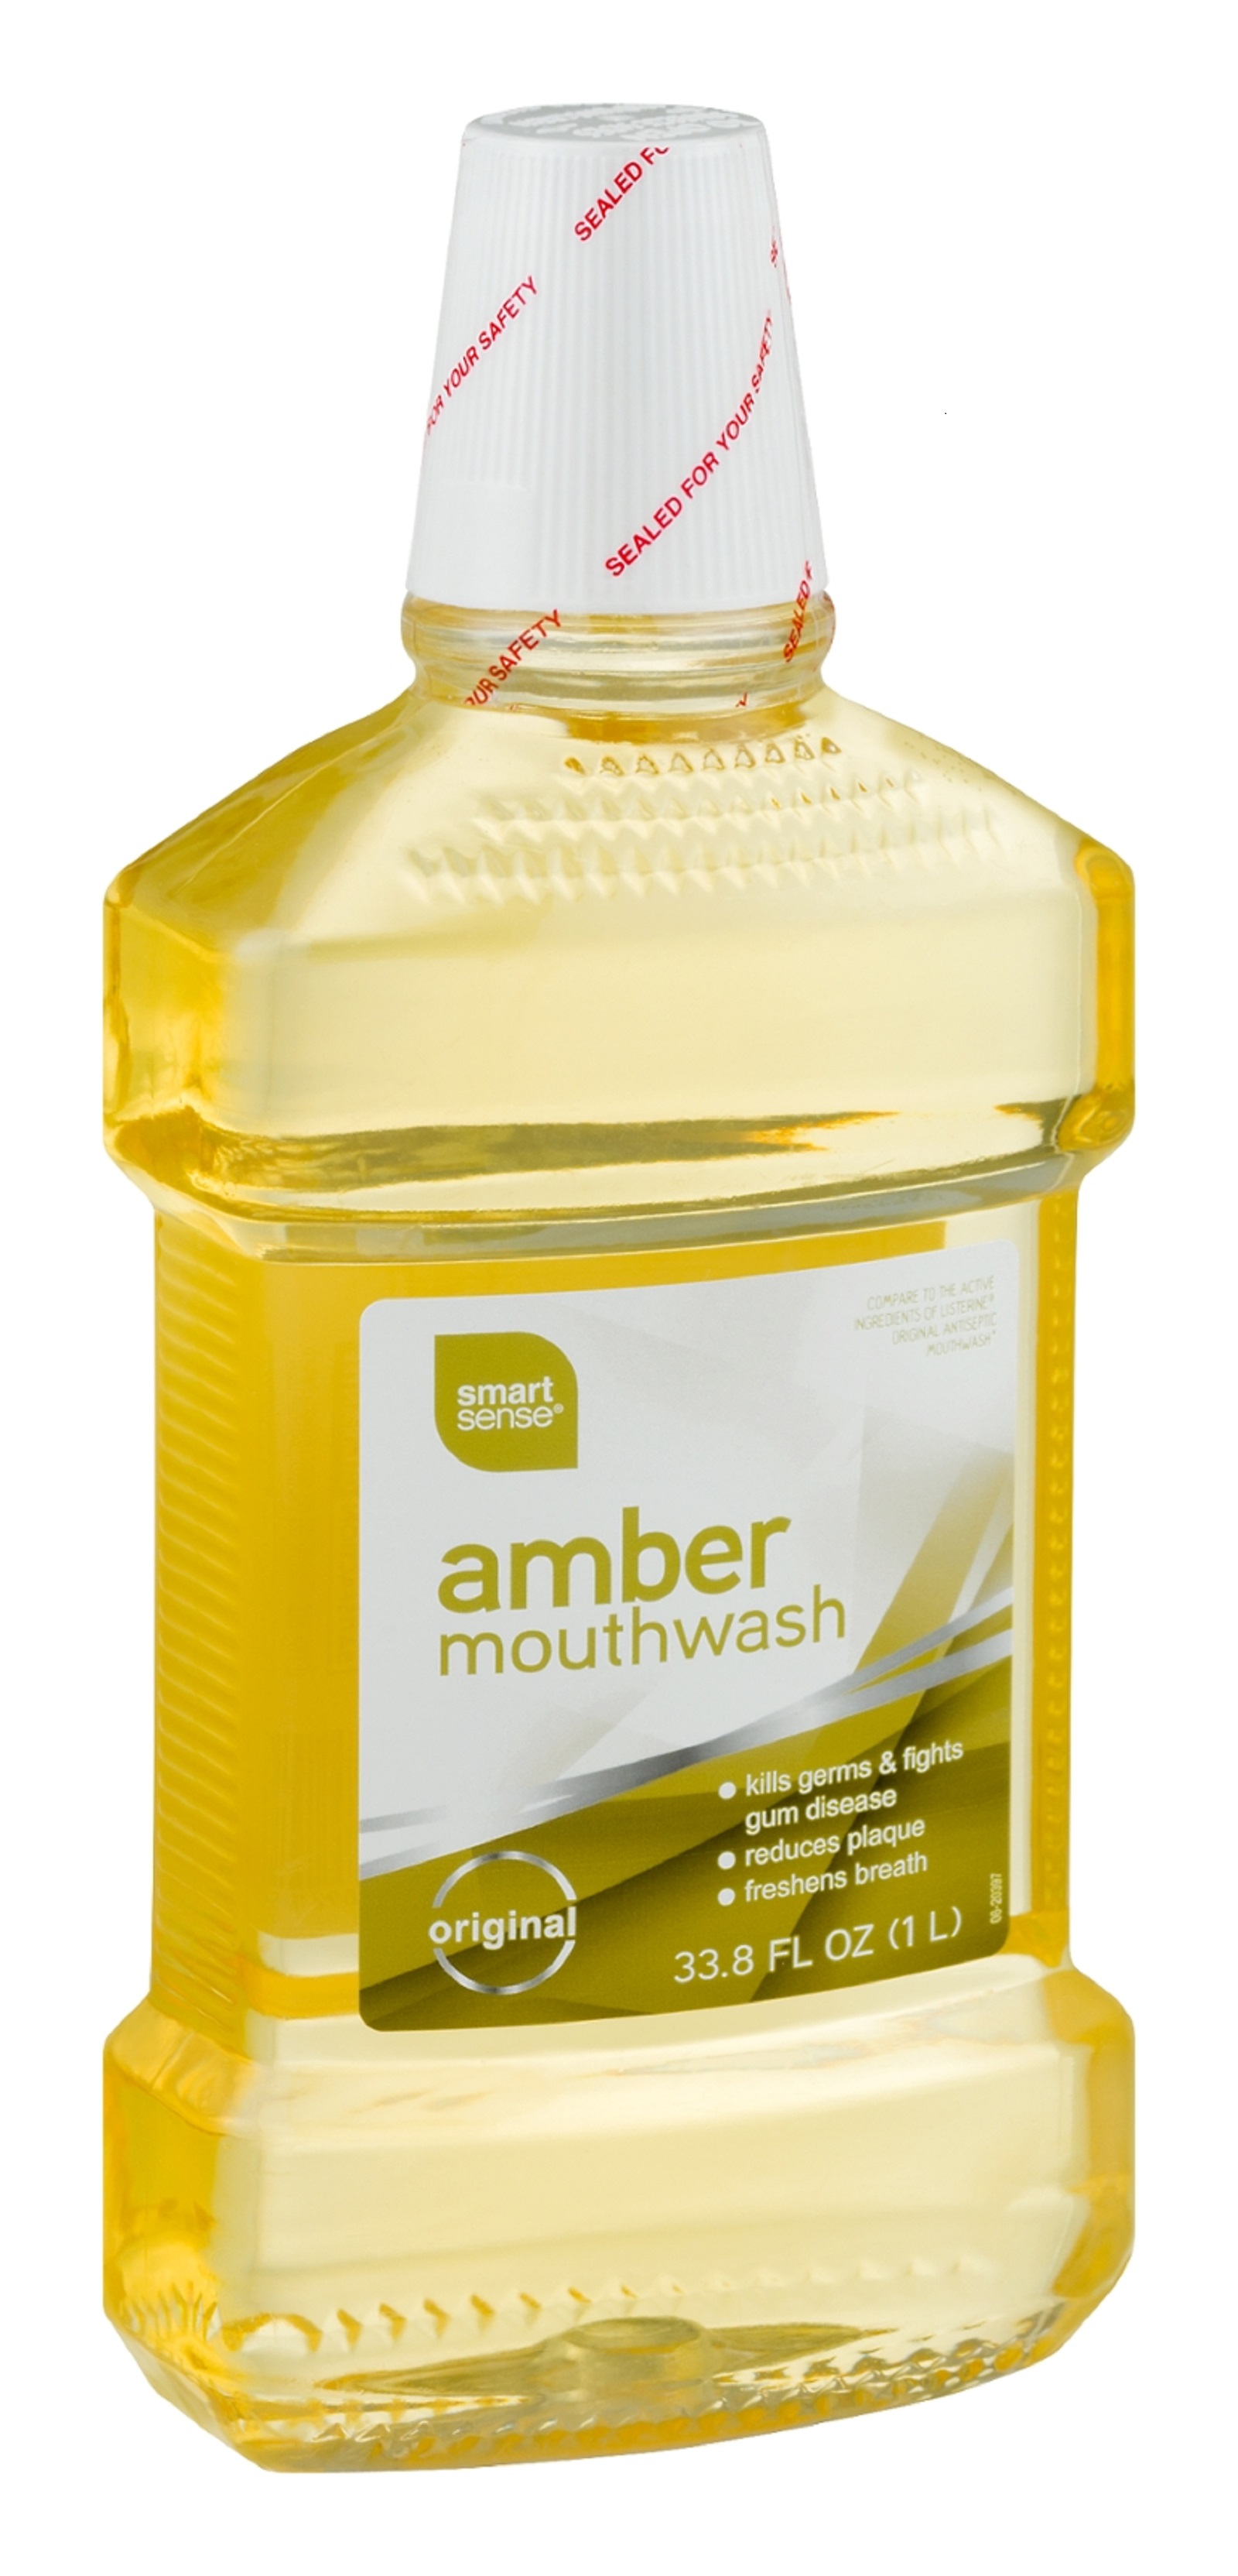 Smart Sense Amber Mouthwash 33.8 FL OZ